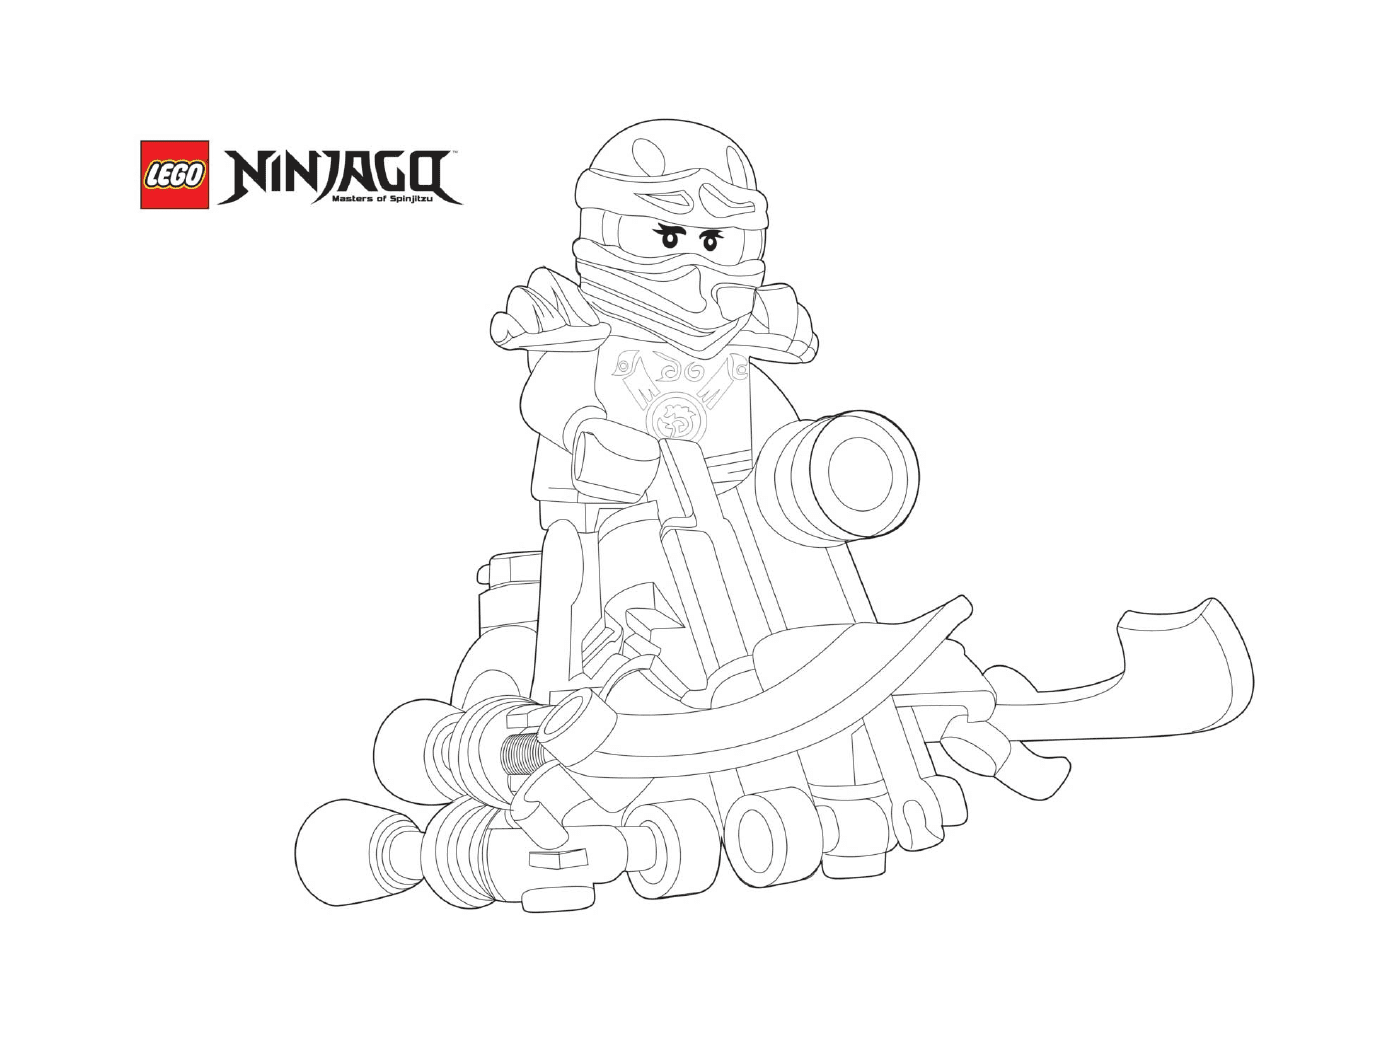  Ninjago en una motocicleta voladora 